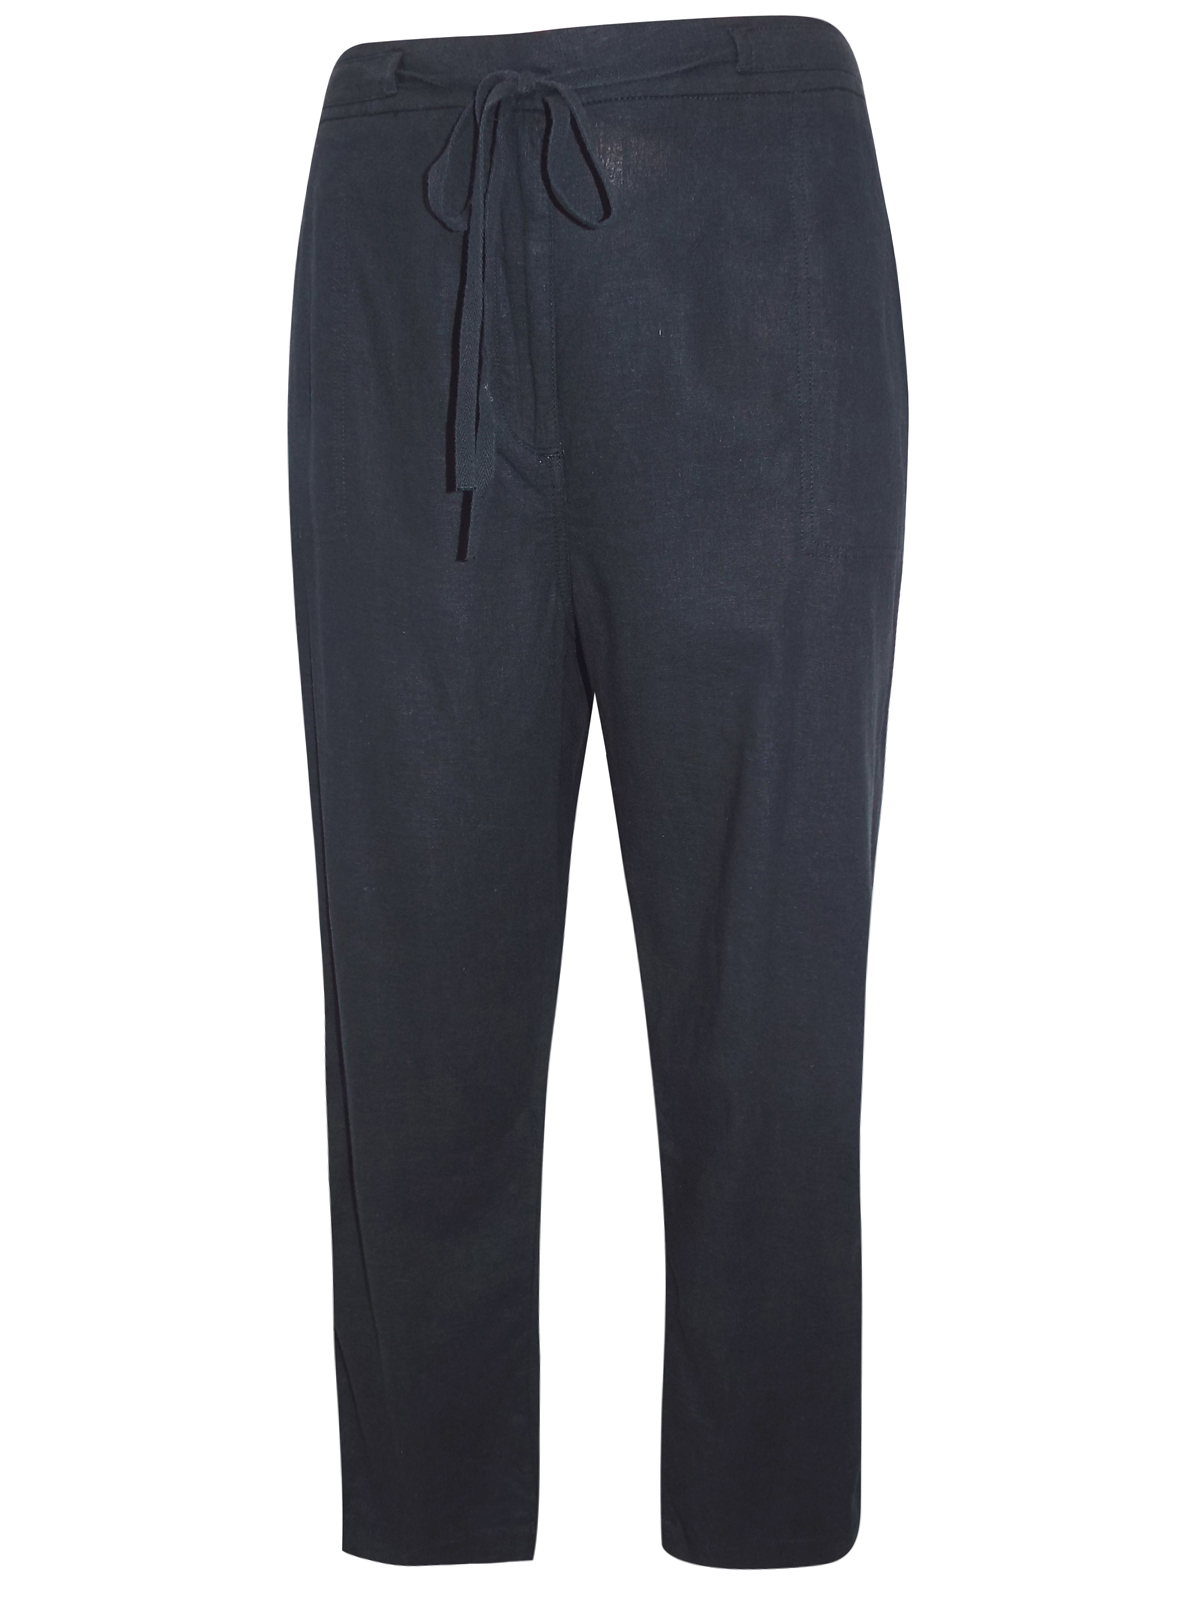 N3w L00k Curve BLACK Linen Blend Drawstring Trousers - Plus Size 20 to 28